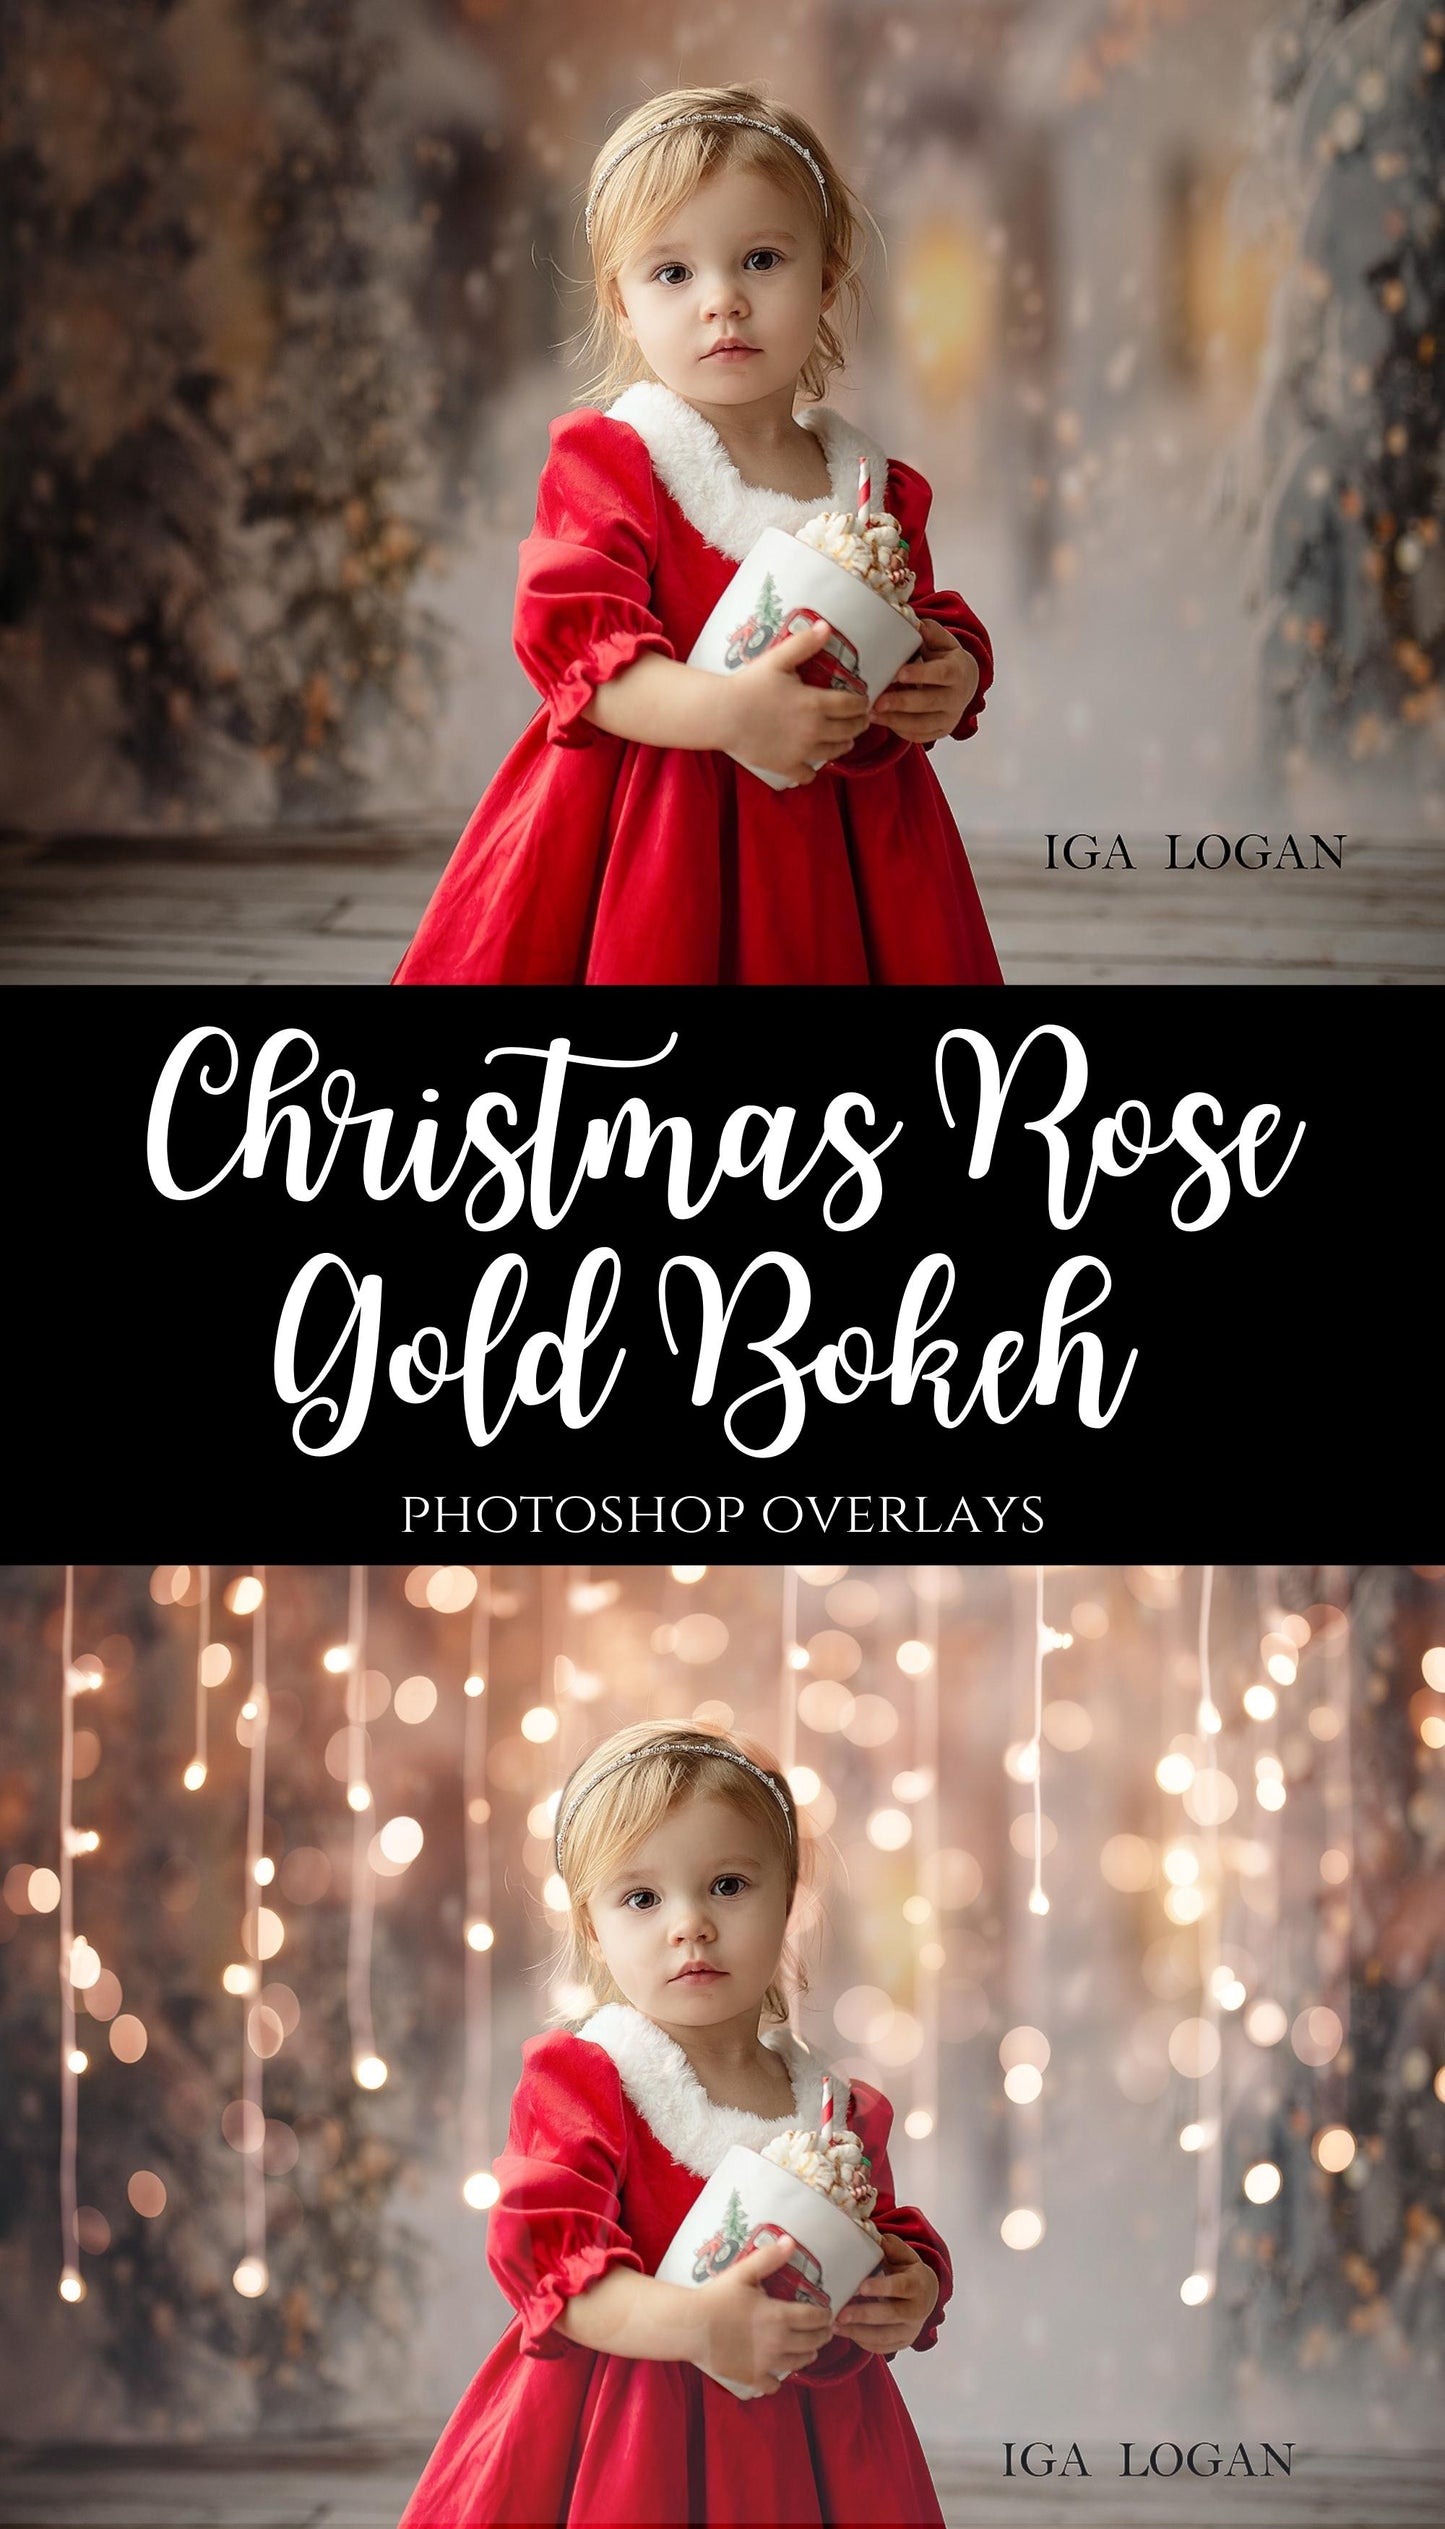 Rose Gold Bokeh Light Christmas Overlays